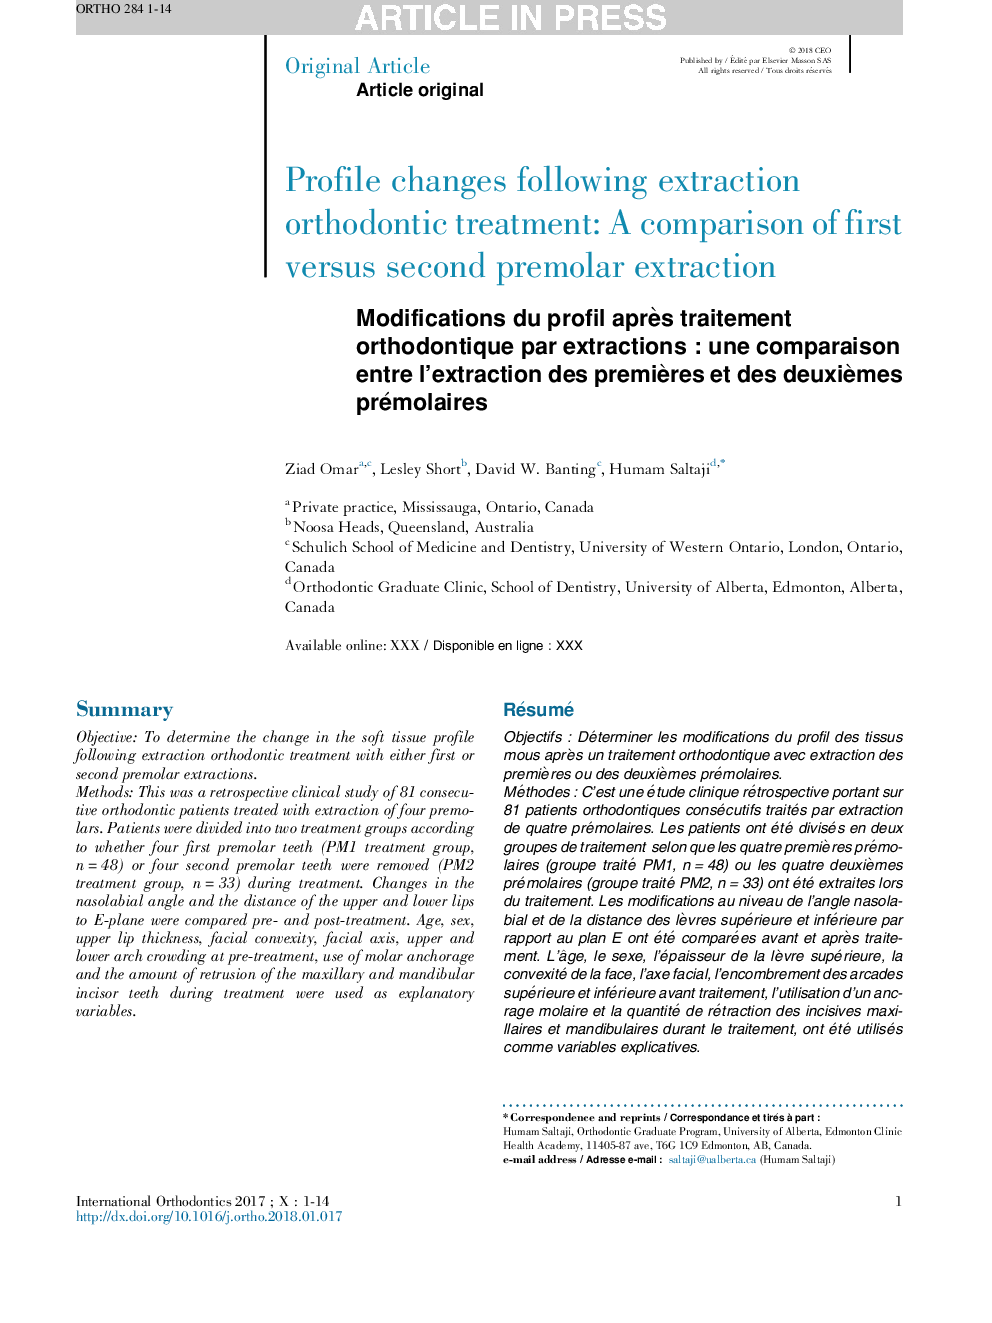 Modifications du profil aprÃ¨s traitement orthodontique par extractionsÂ : une comparaison entre l'extraction des premiÃ¨res et des deuxiÃ¨mes prémolaires